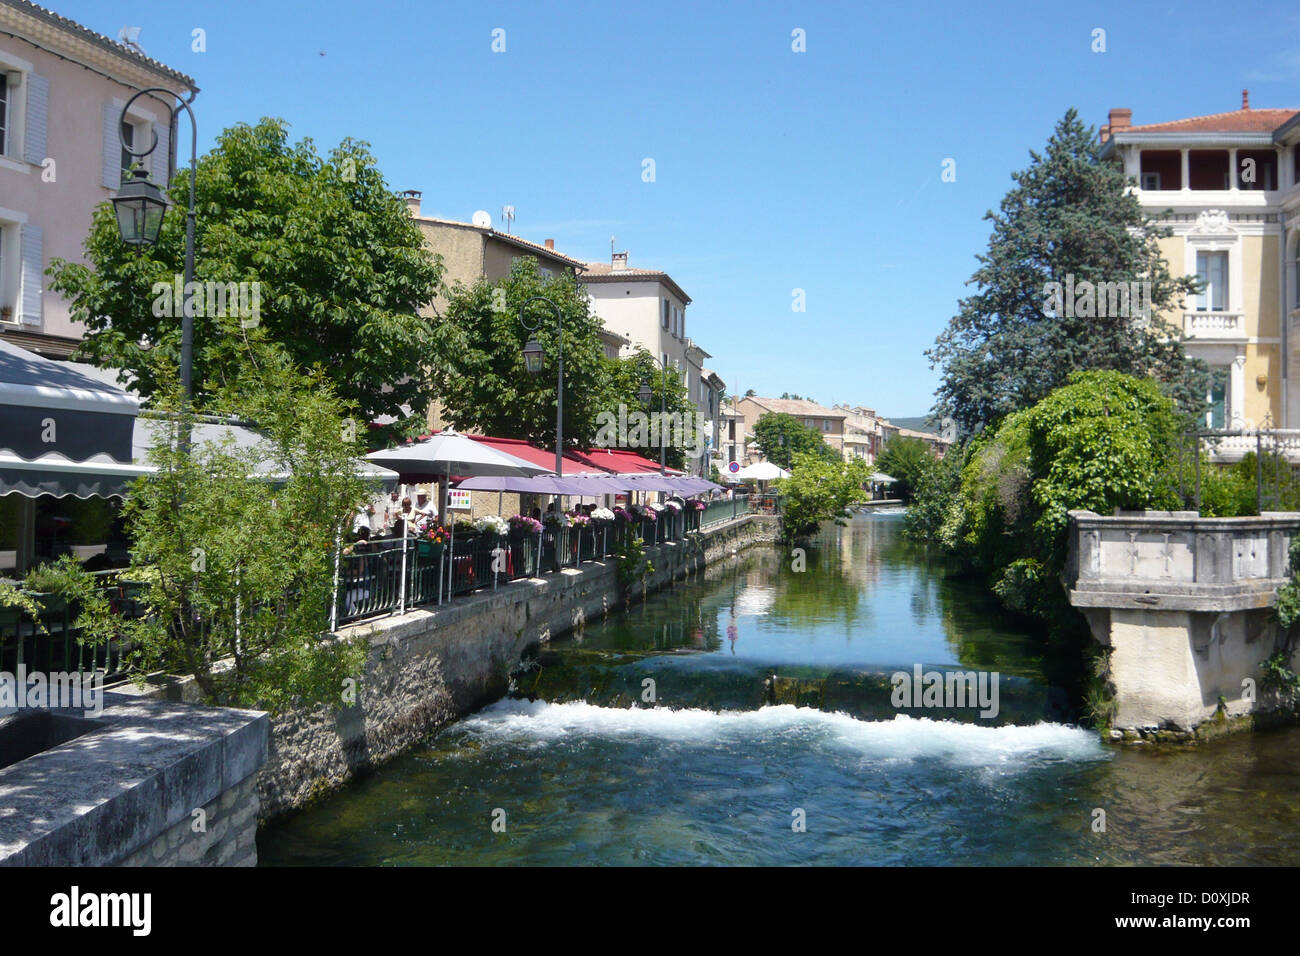 France, Europe, Provence, L'Isle-sur-la-Sorgue, Vaucluse, river, flow, idyllic Stock Photo